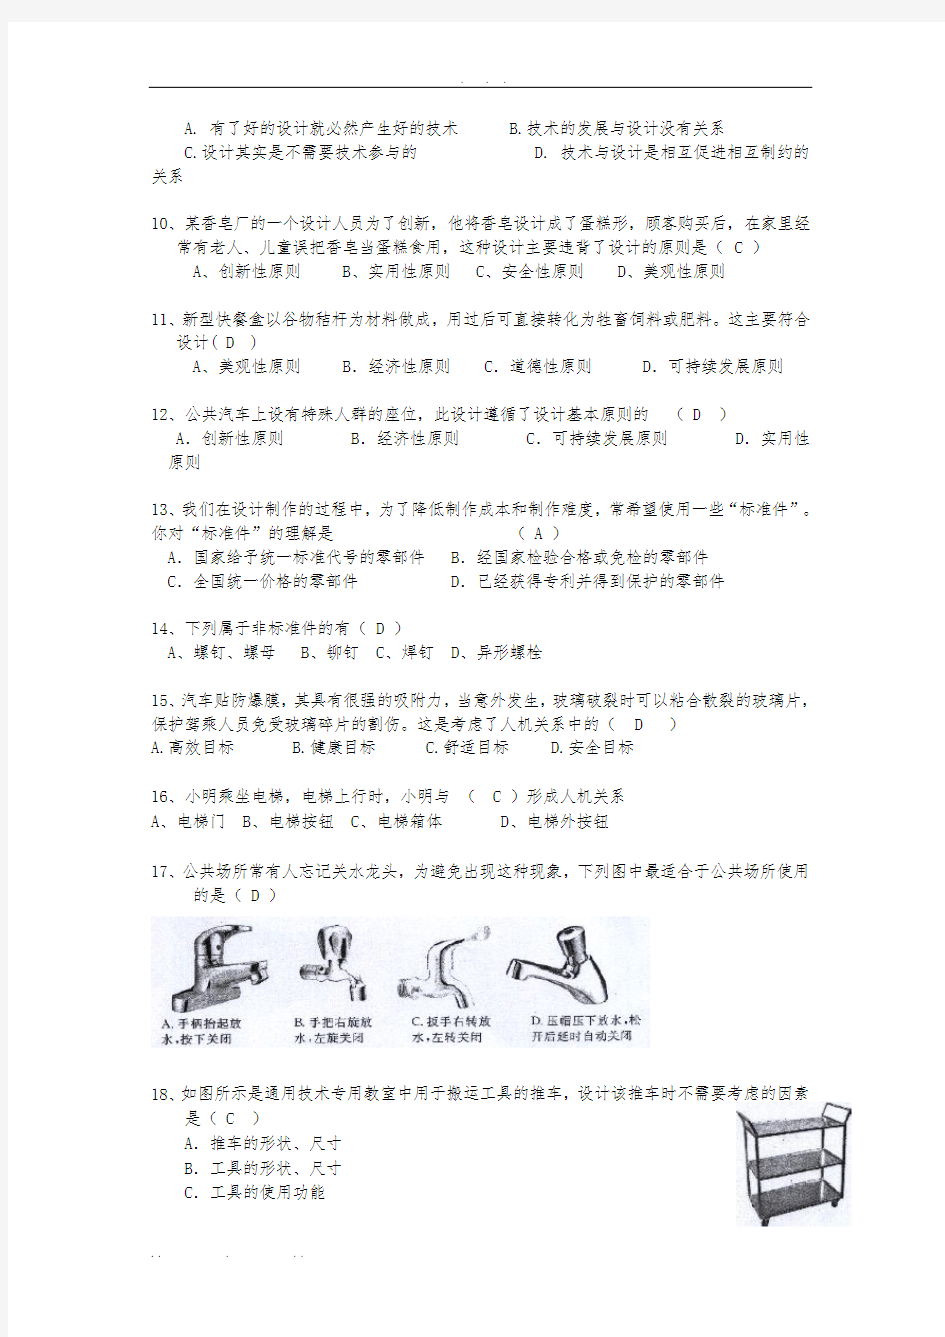 2013年贵州省普通高中学业水平考试部分试题(通用技术)